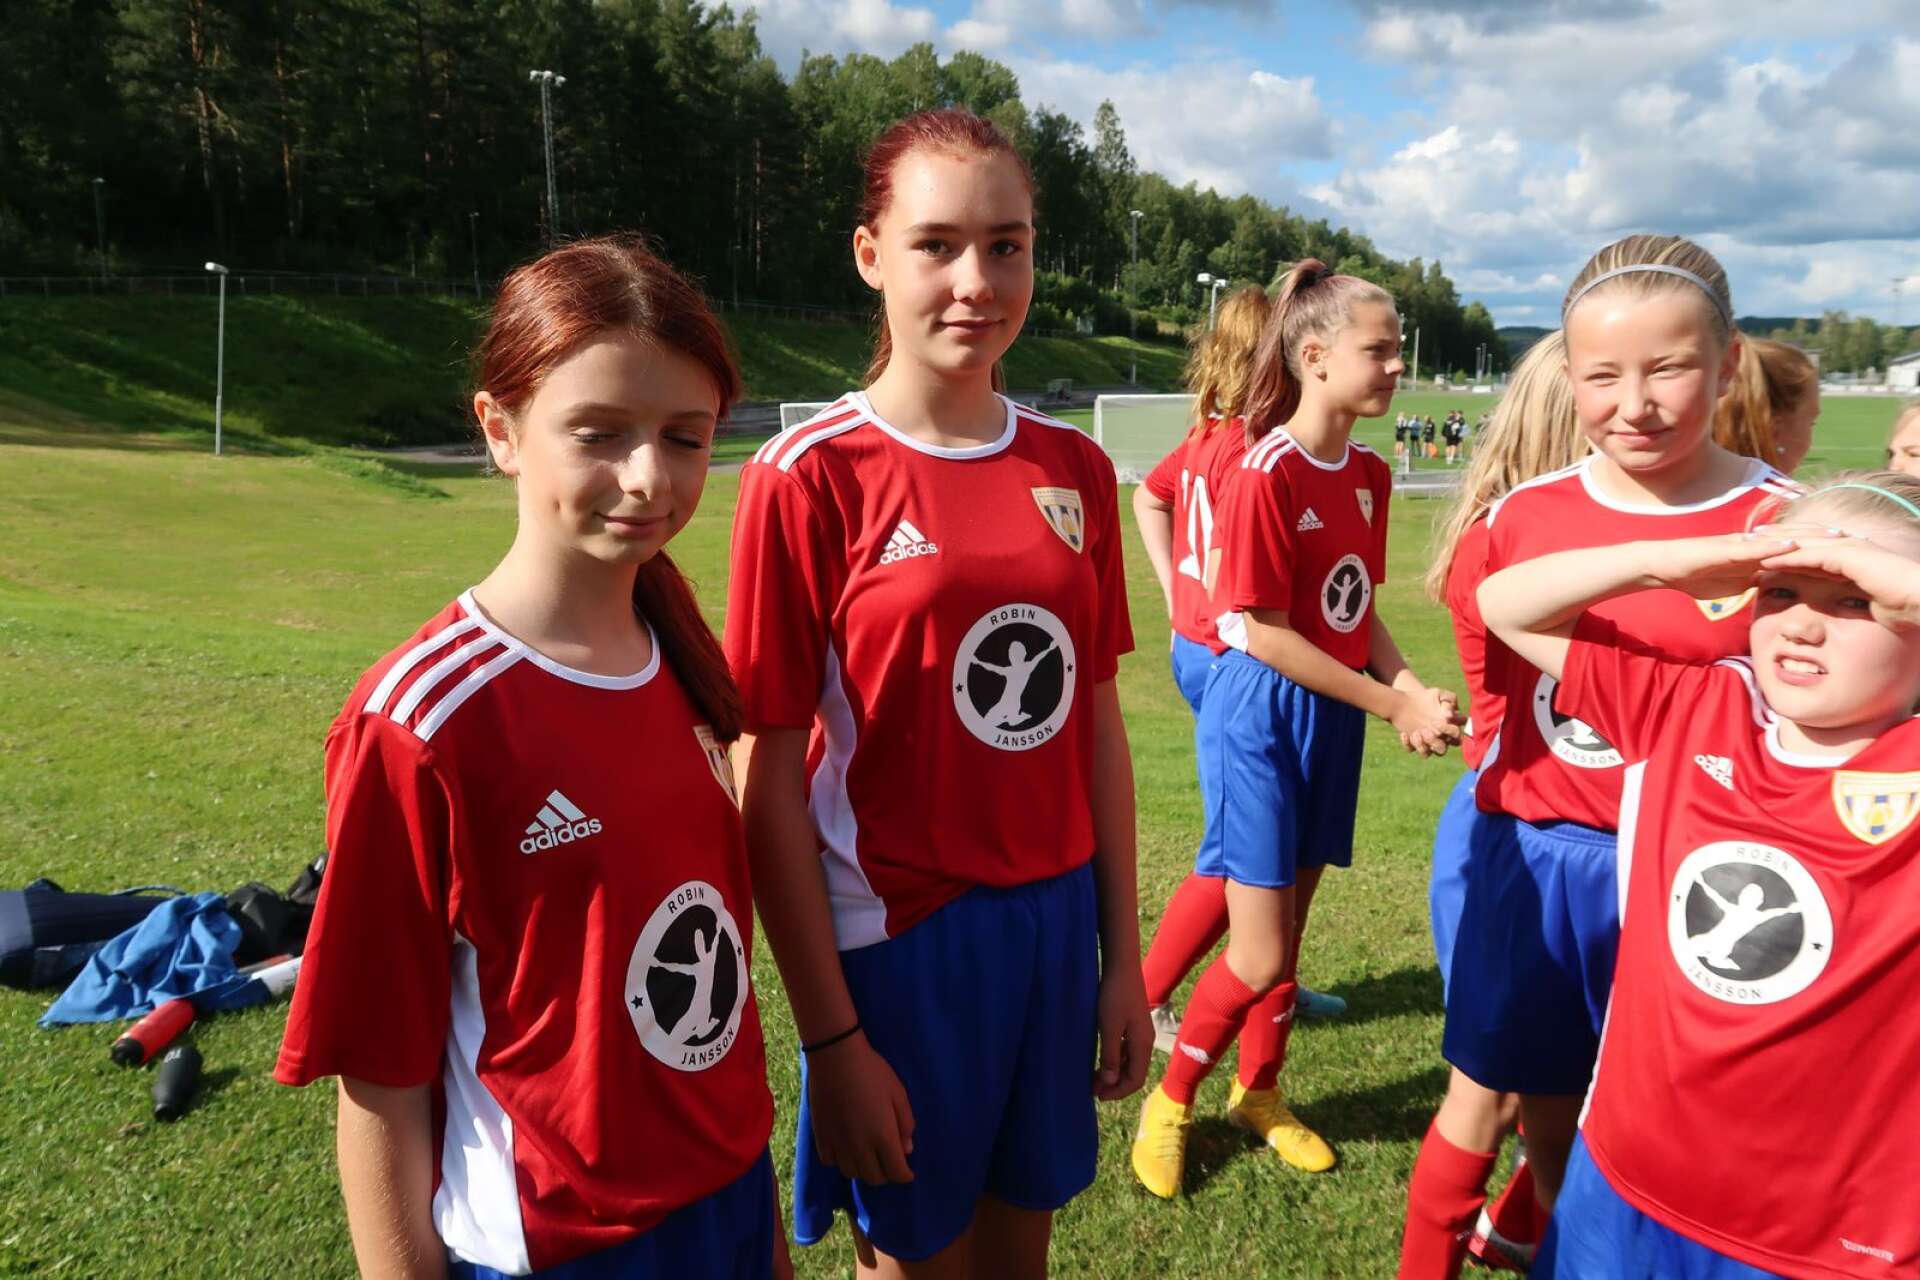 Från vänster Nicole Aleksic, Nadia Magnusson, Tindra Eriksson, Vendela Ohlsson är jätteglada för de nya ställen laget fått.